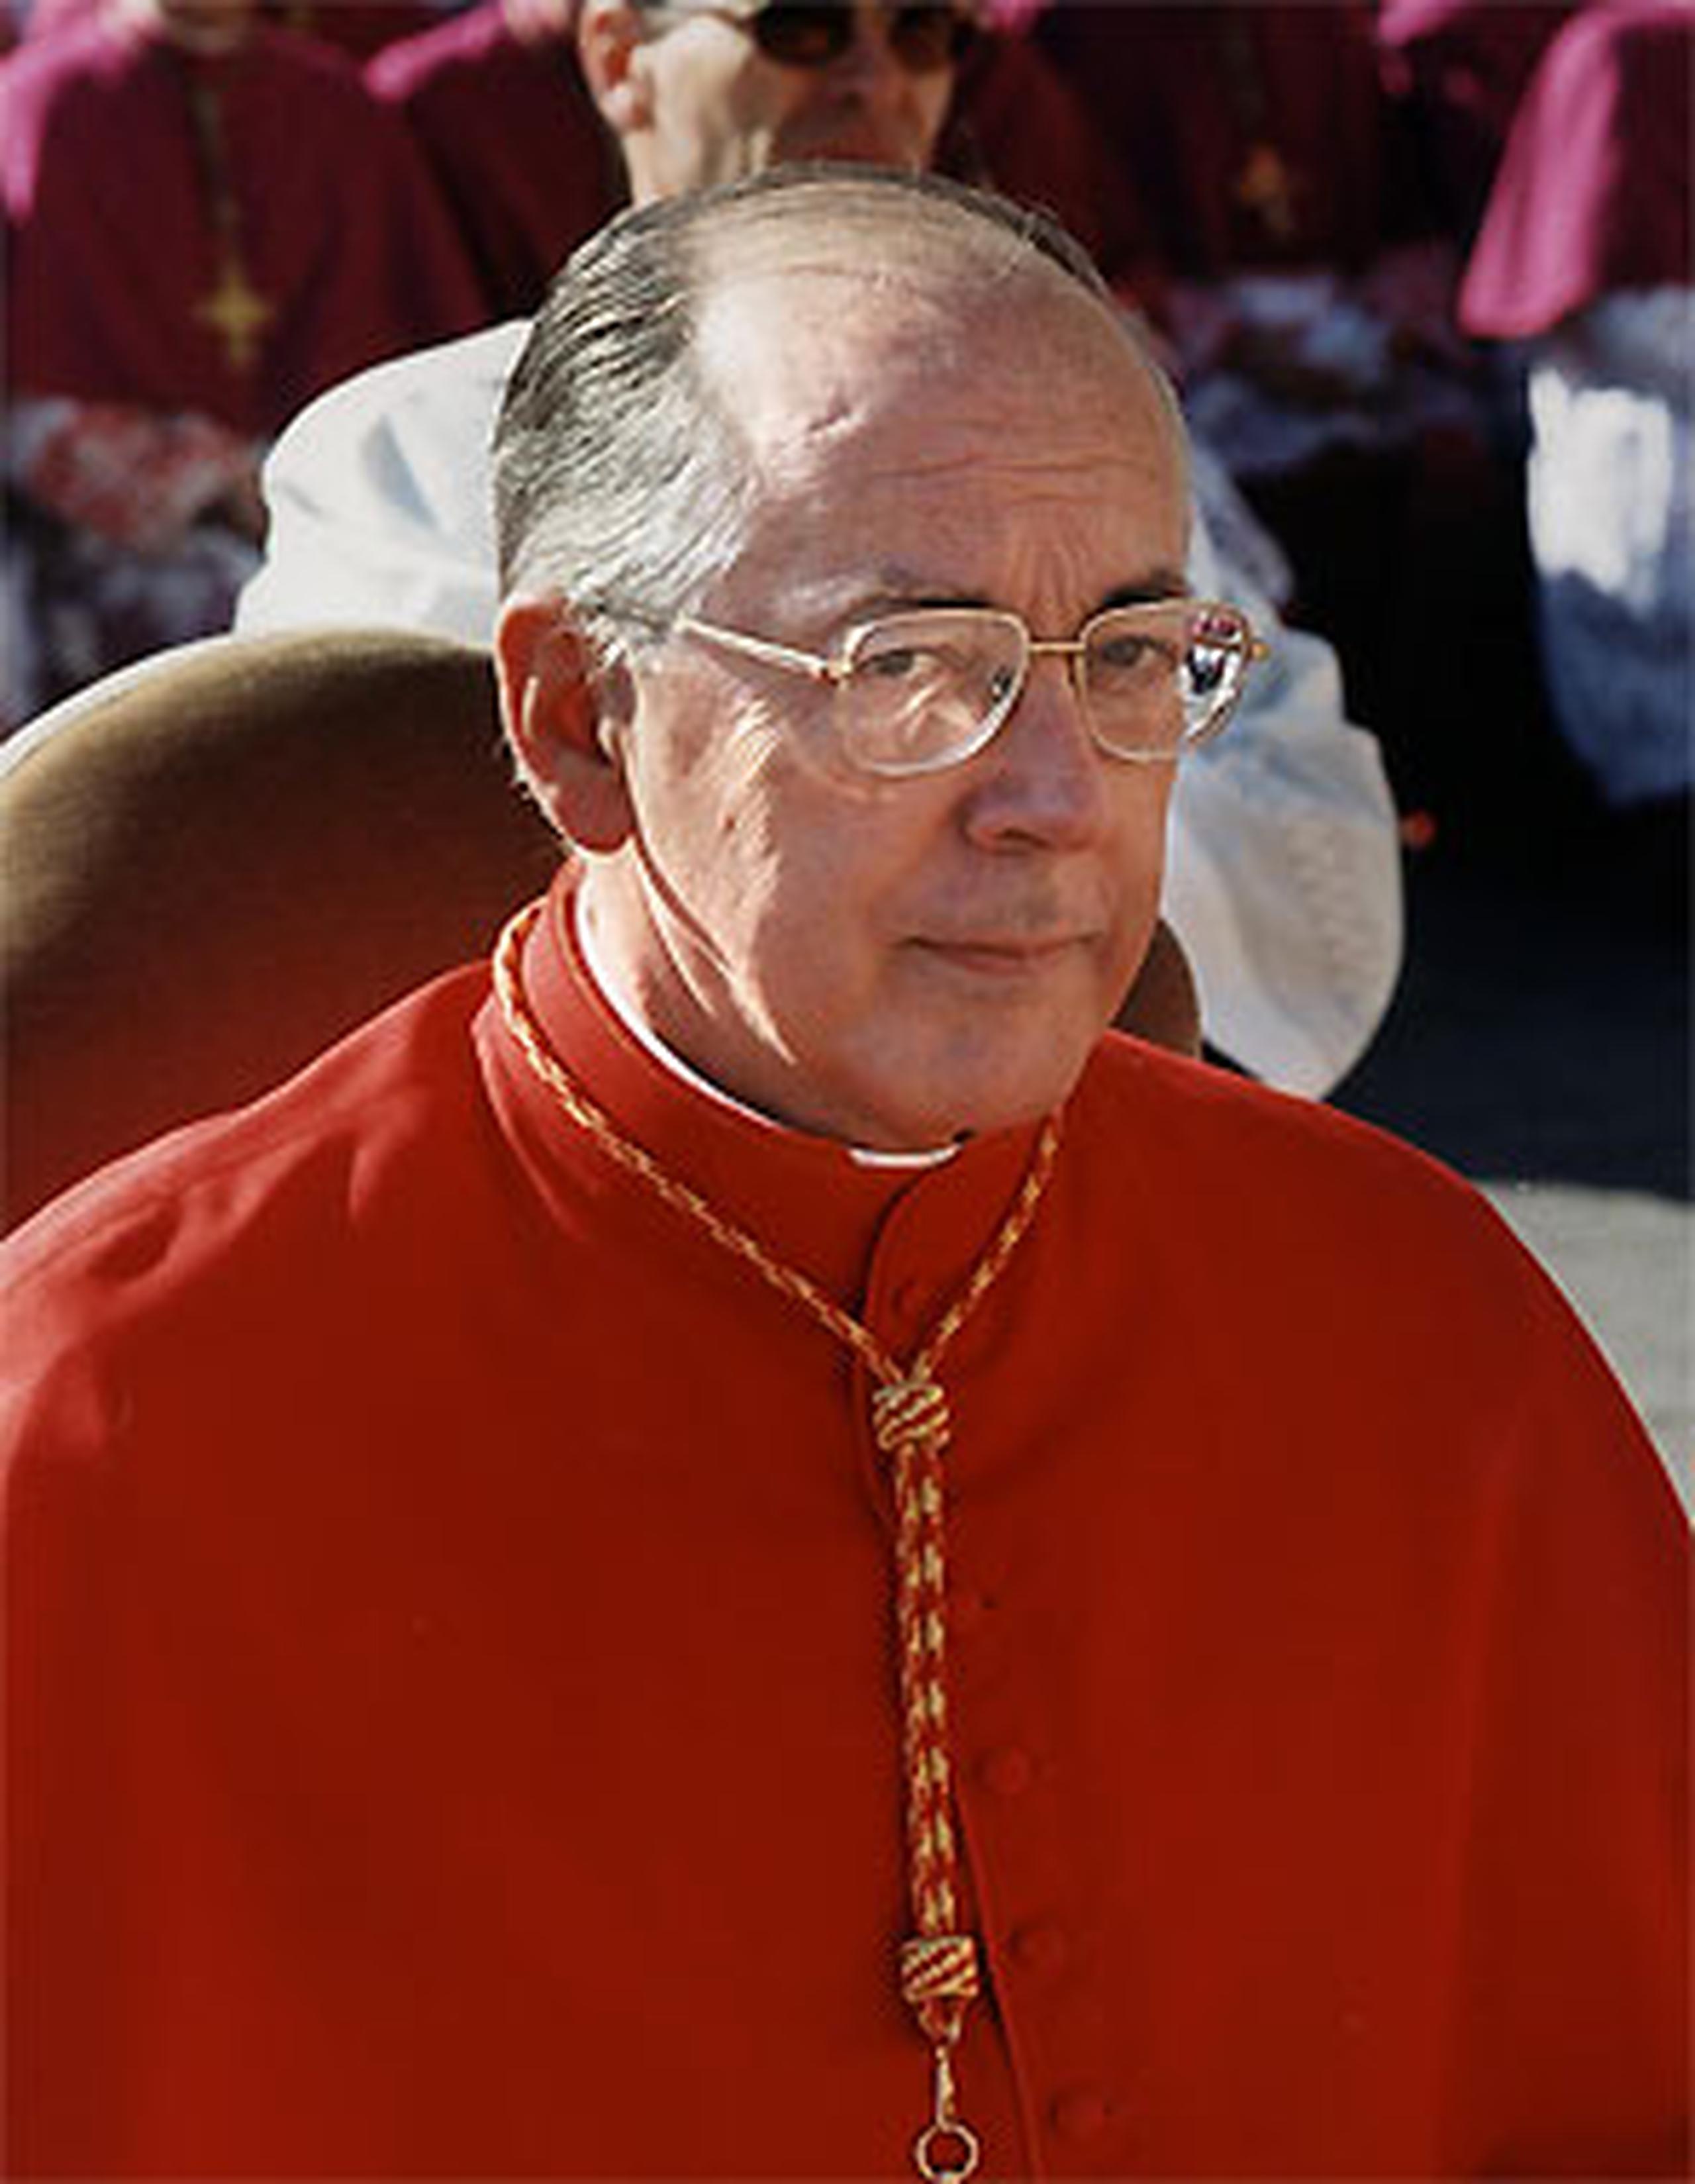 El cardenal peruano manifestó que durante esas reuniones previas al cónclave los purpurados recibieron "muy poca" información sobre el Vatileaks, "y eso que la pedimos". (Archivo)